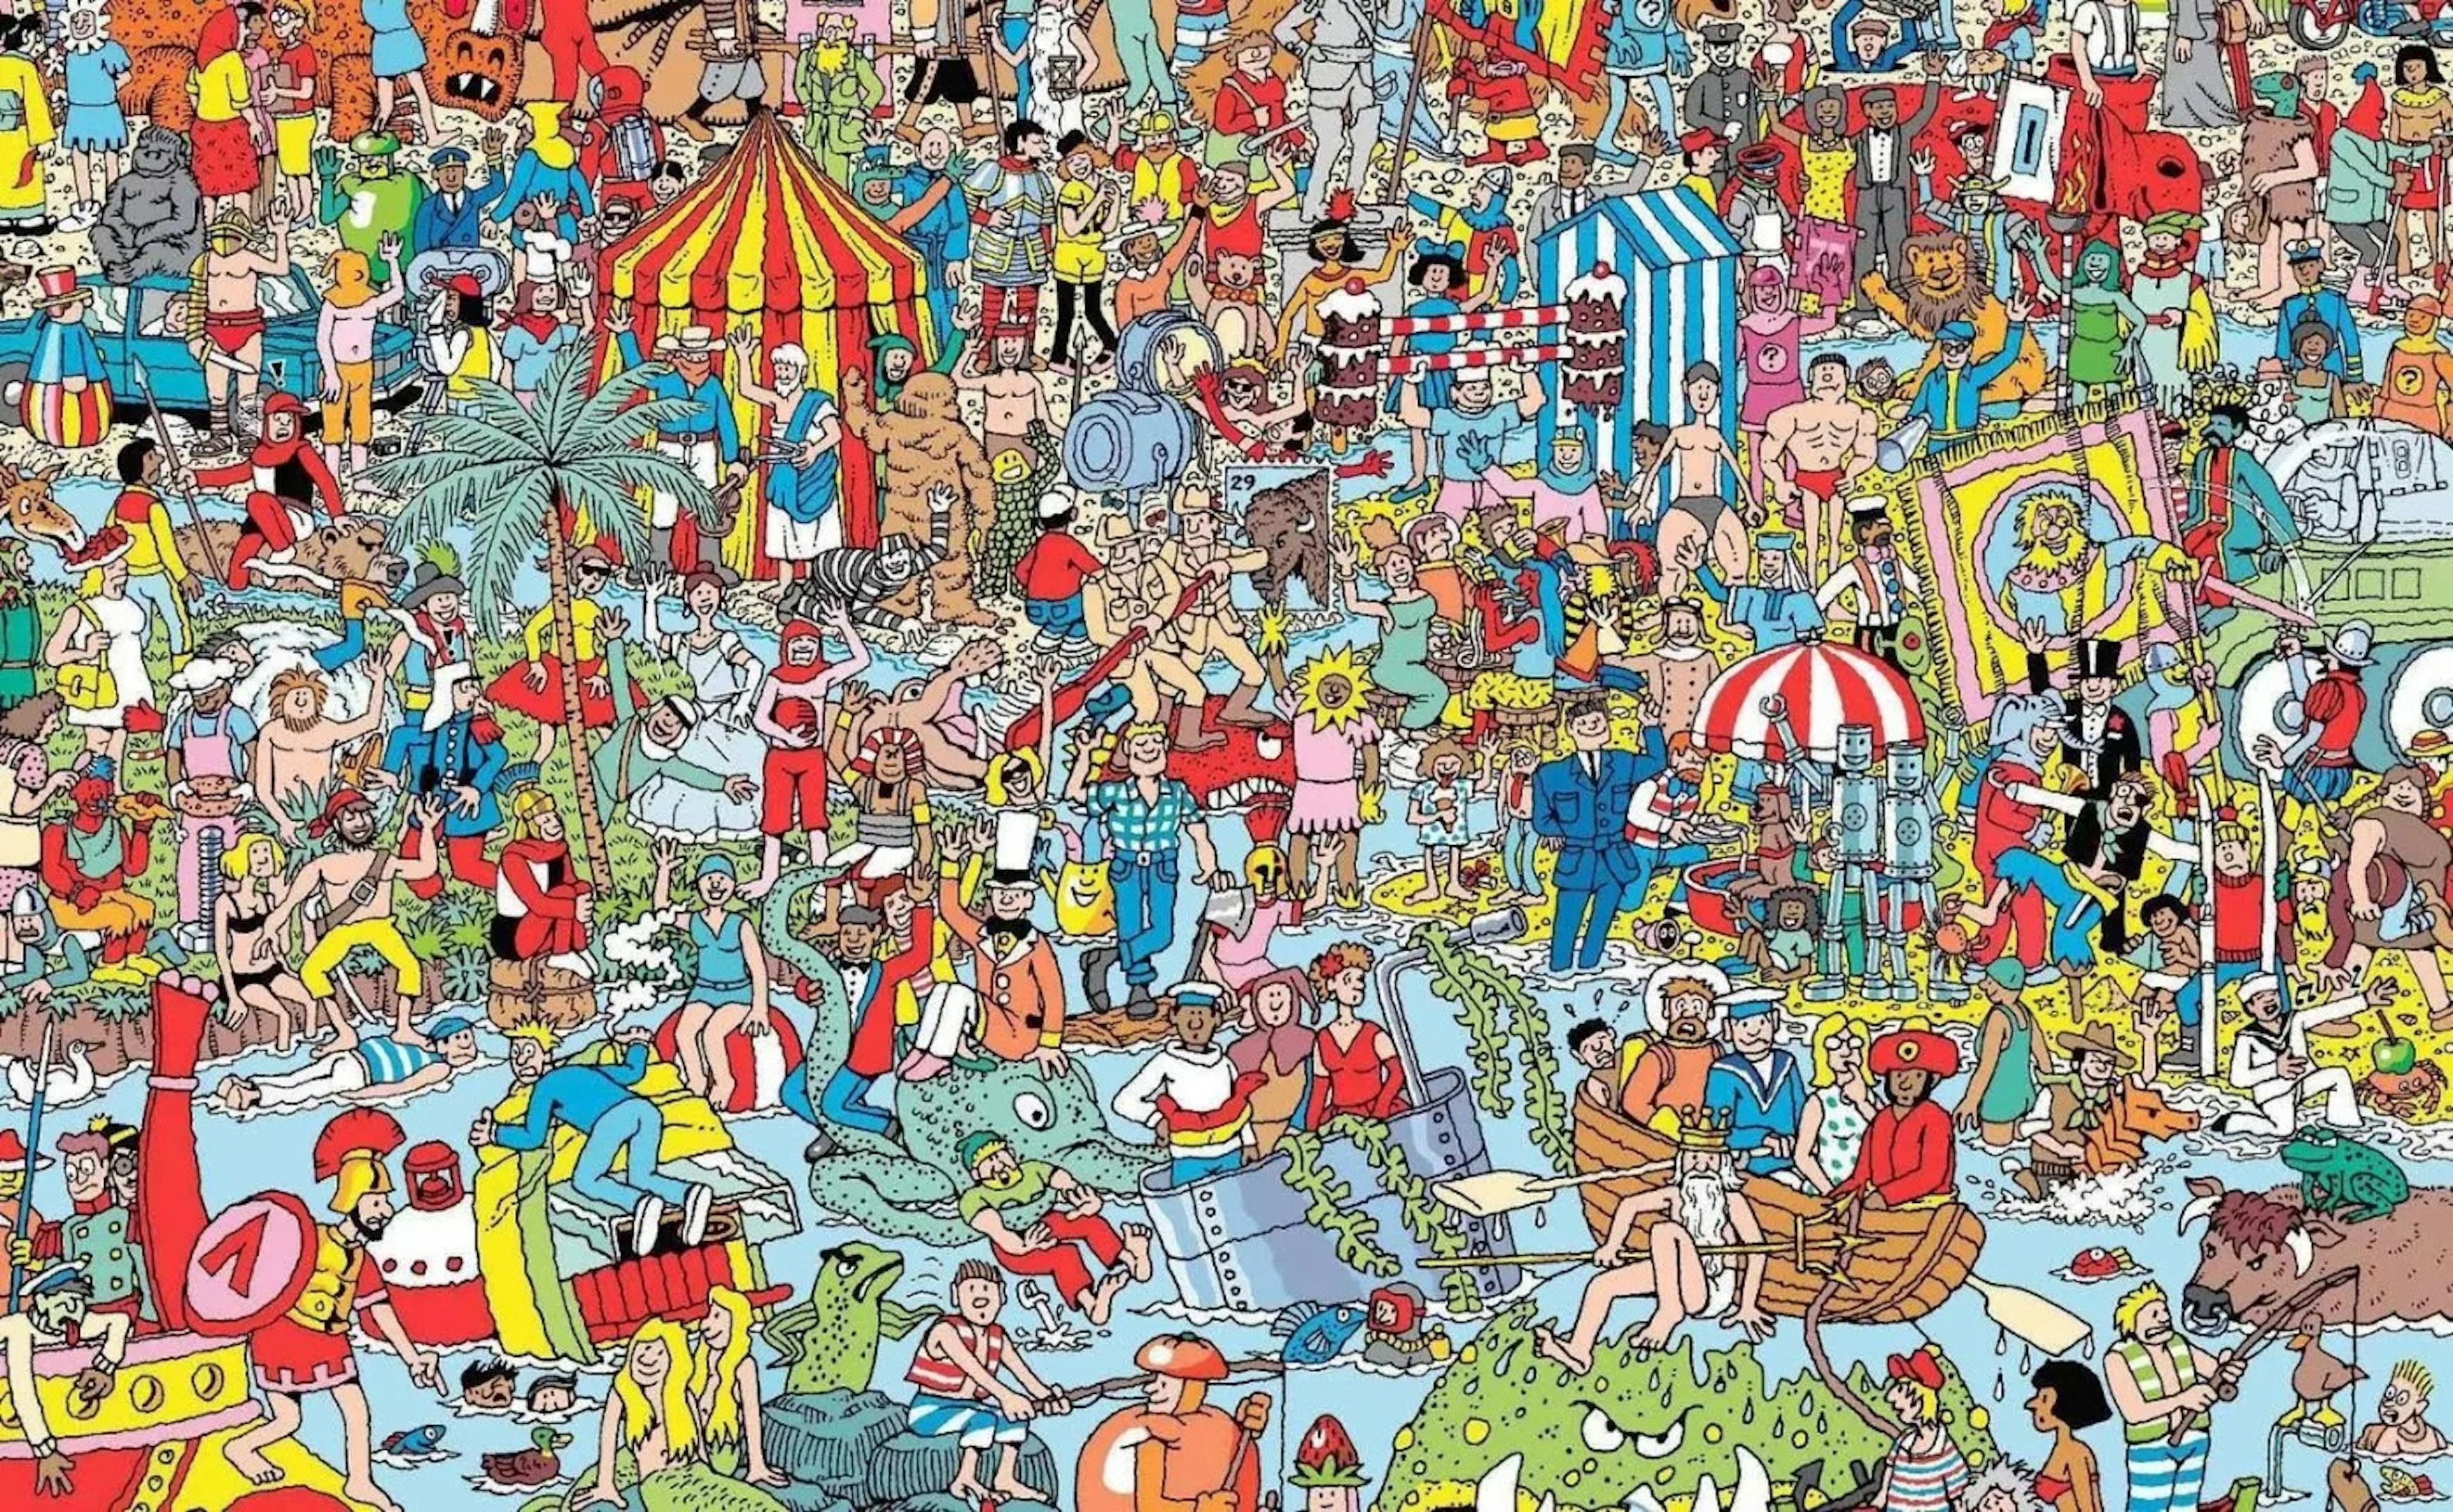 Bạn có tìm thấy Wally trong hình không?